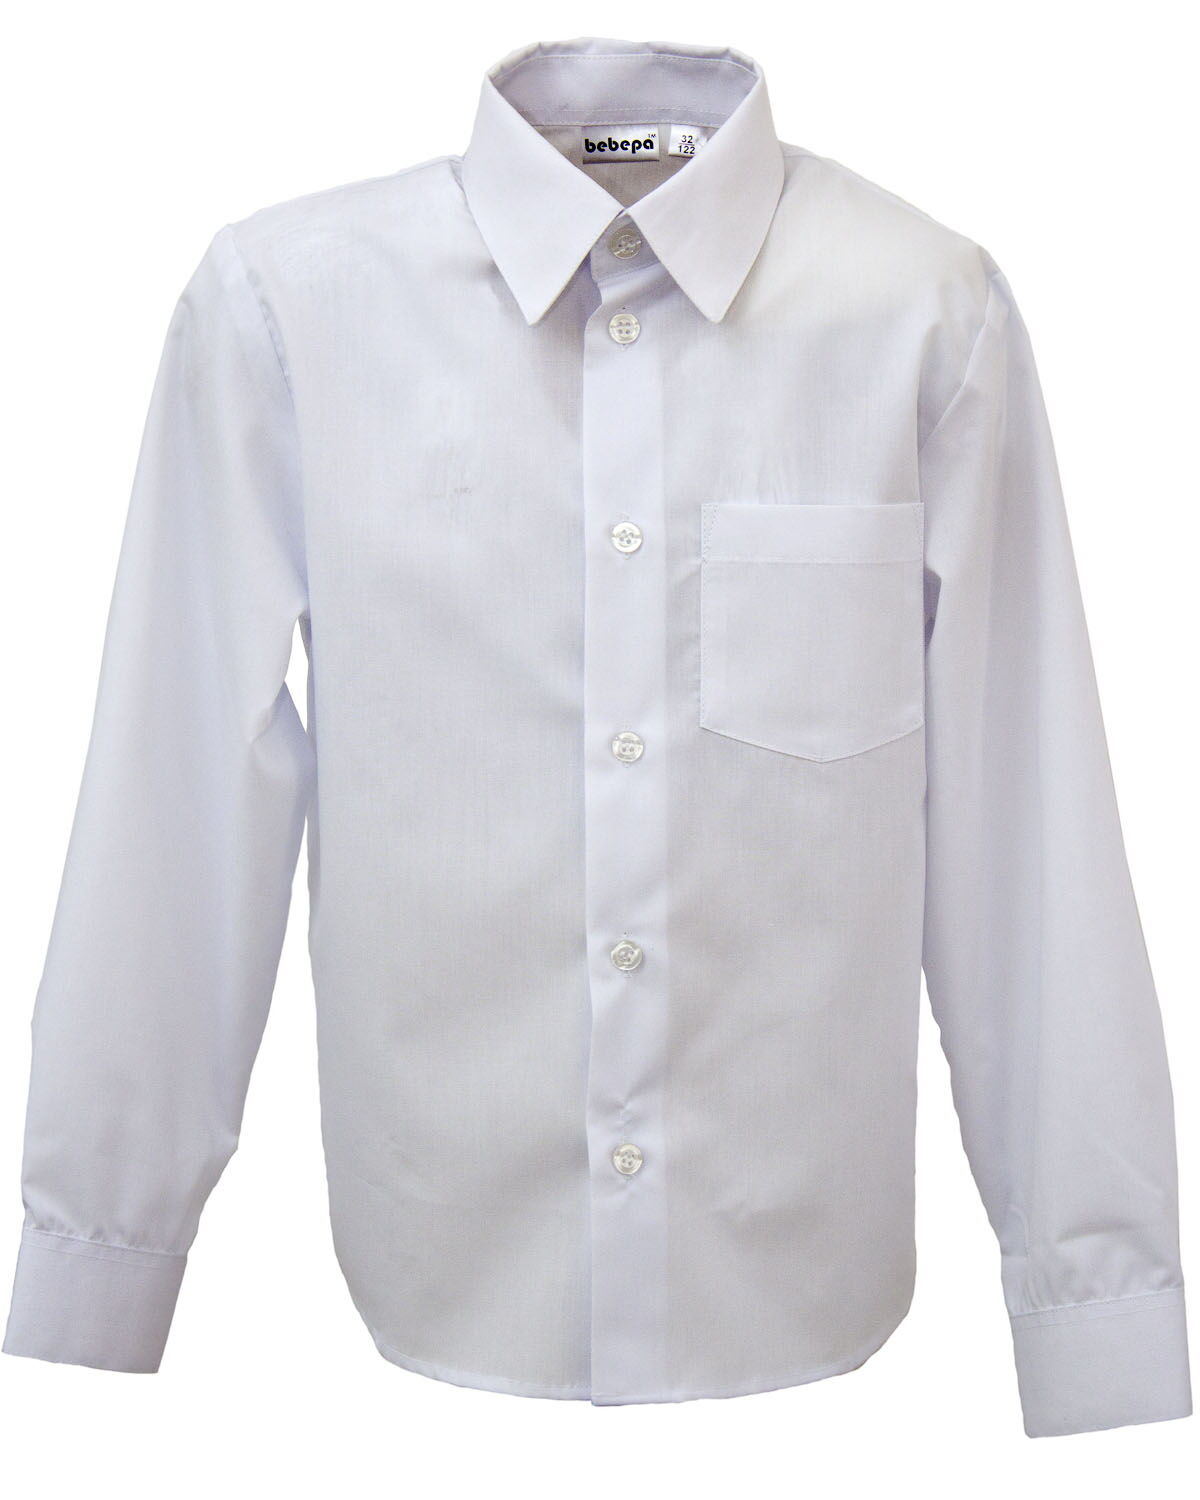 Рубашка с длинным рукавом для мальчика Bebepa белая 1106-136 - цена